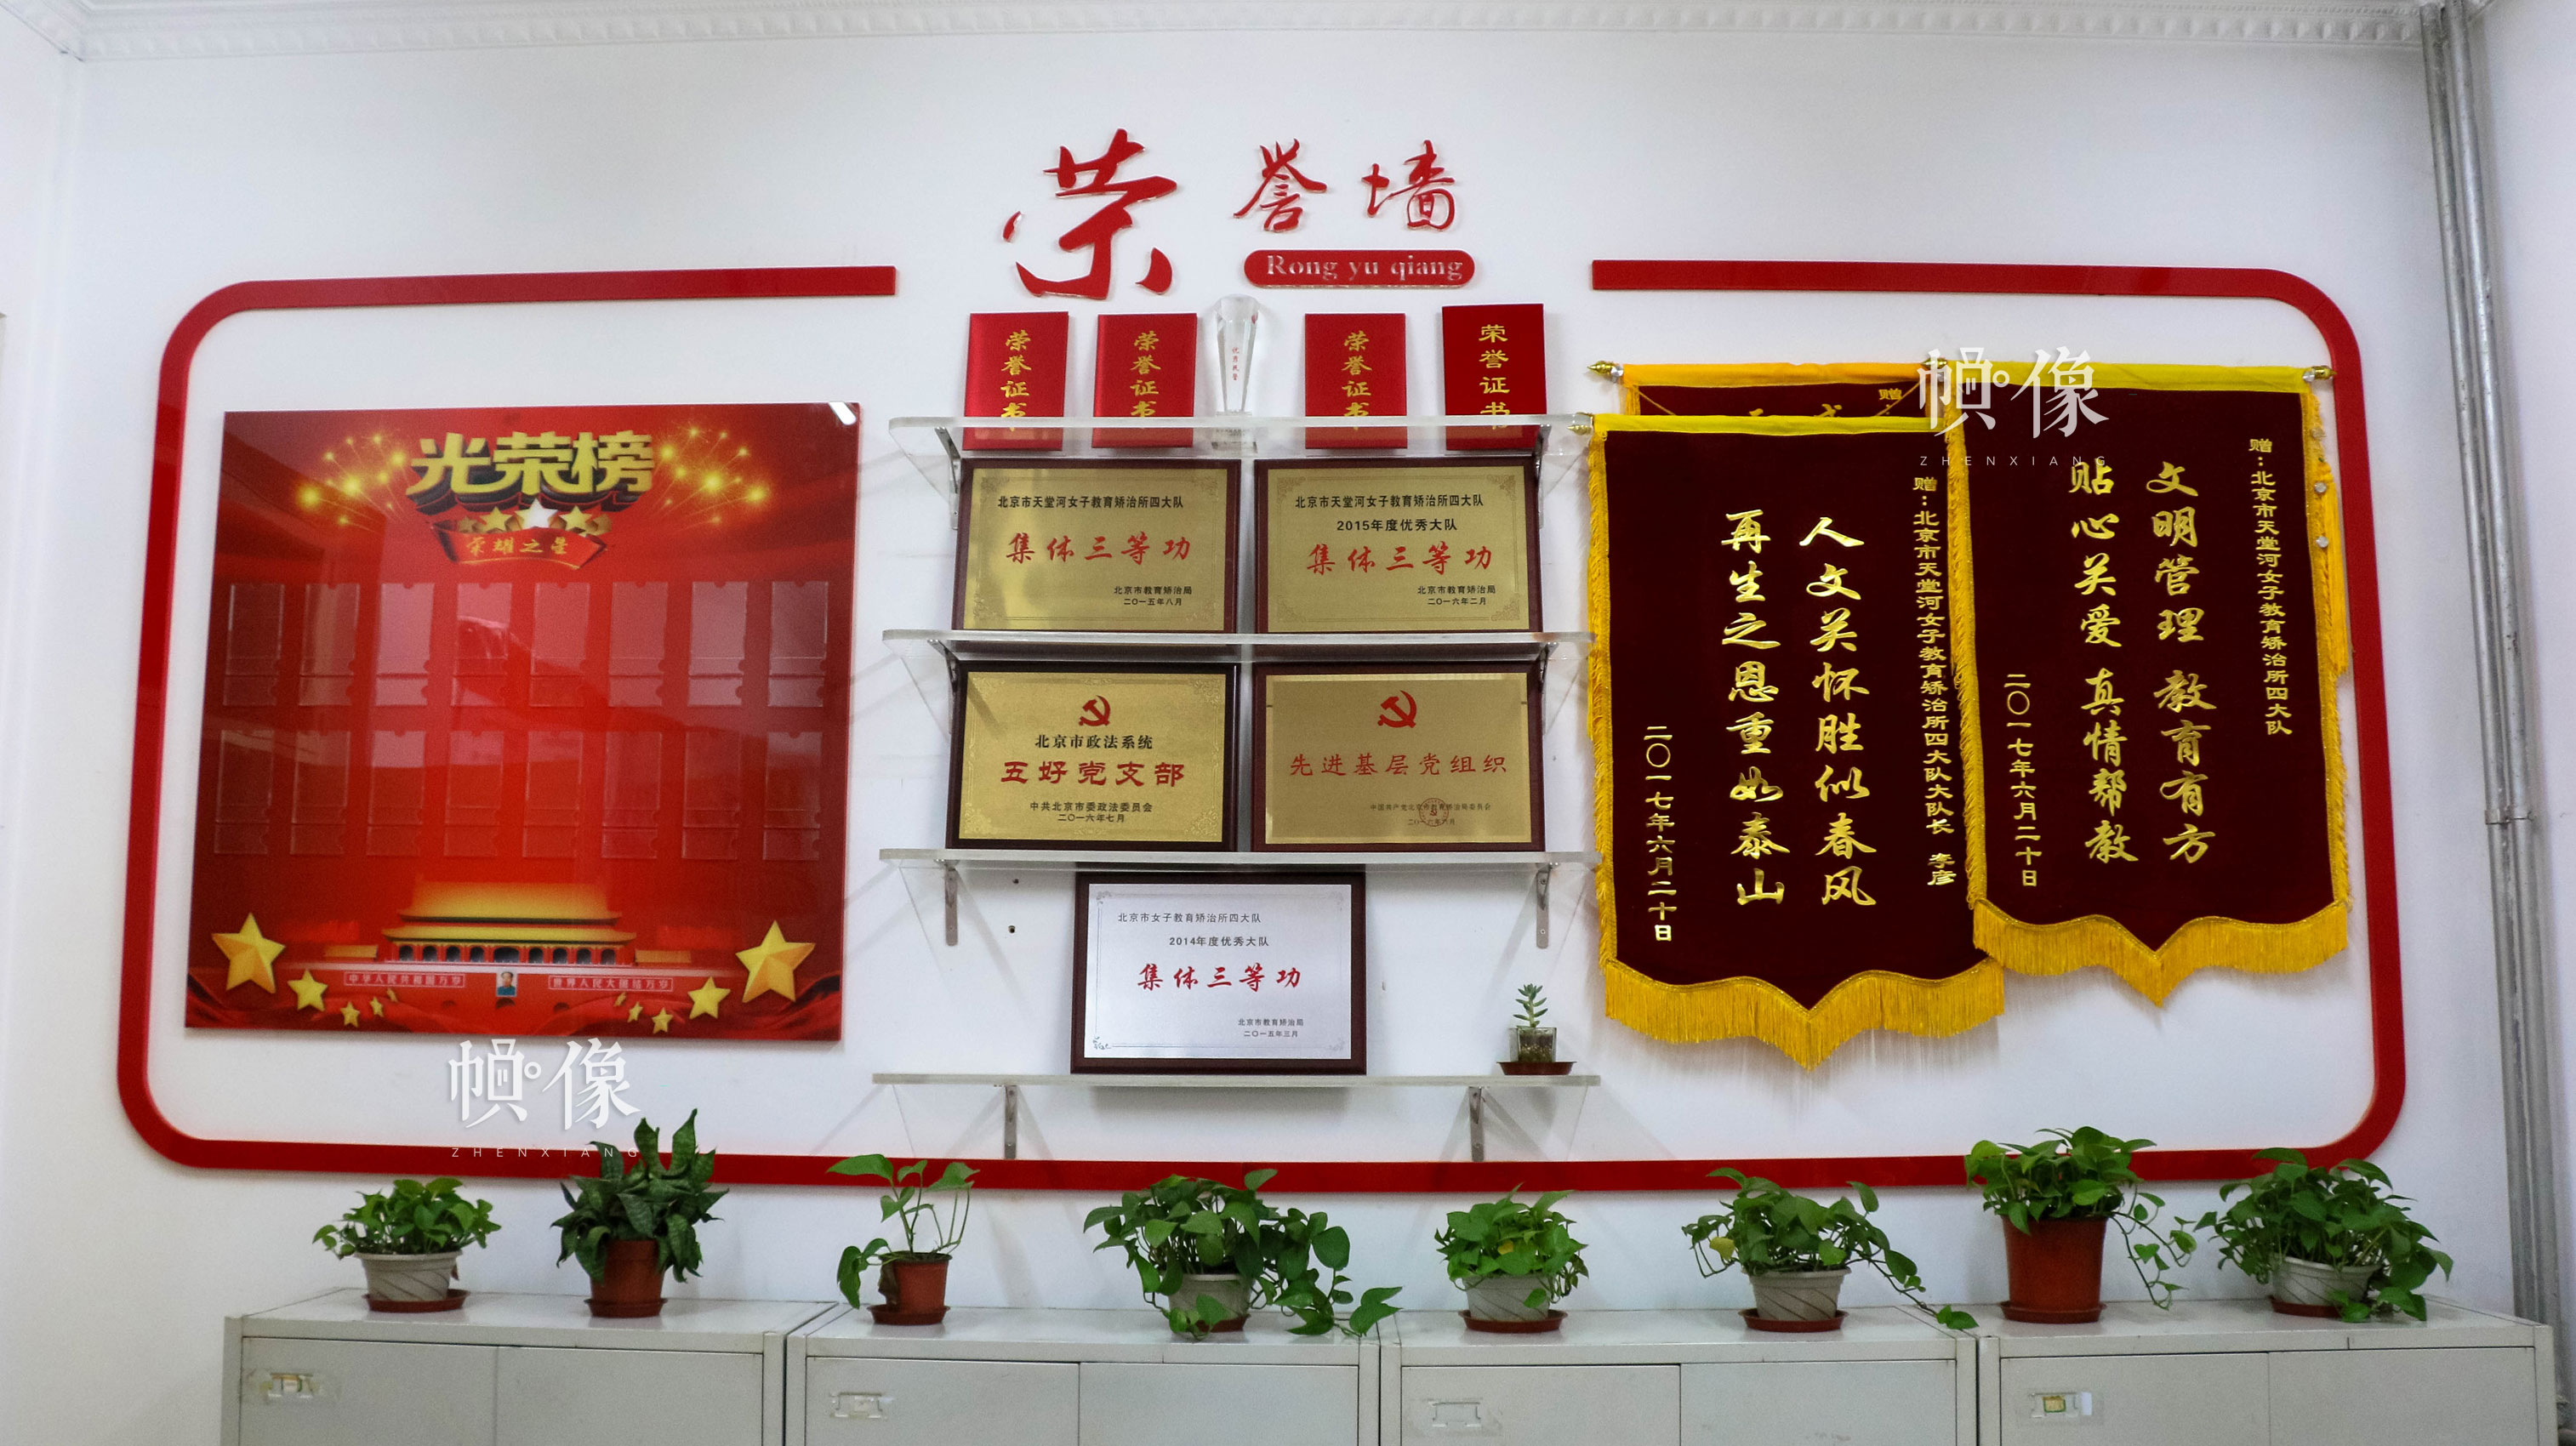 北京市天堂河女子教育矫治所四大队荣誉墙。中国网实习记者 朱珊杉 摄